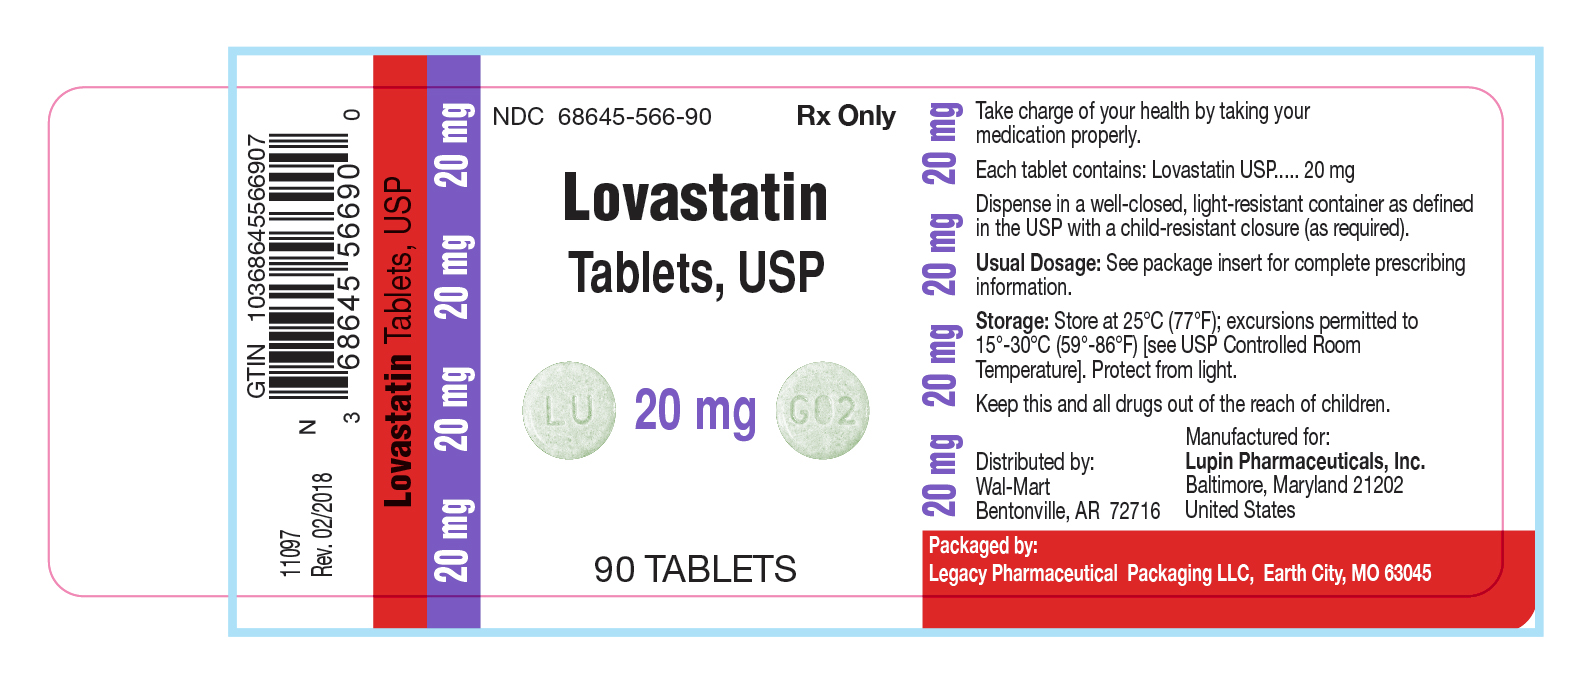 Lovastatin Tablets, USP 20 mg